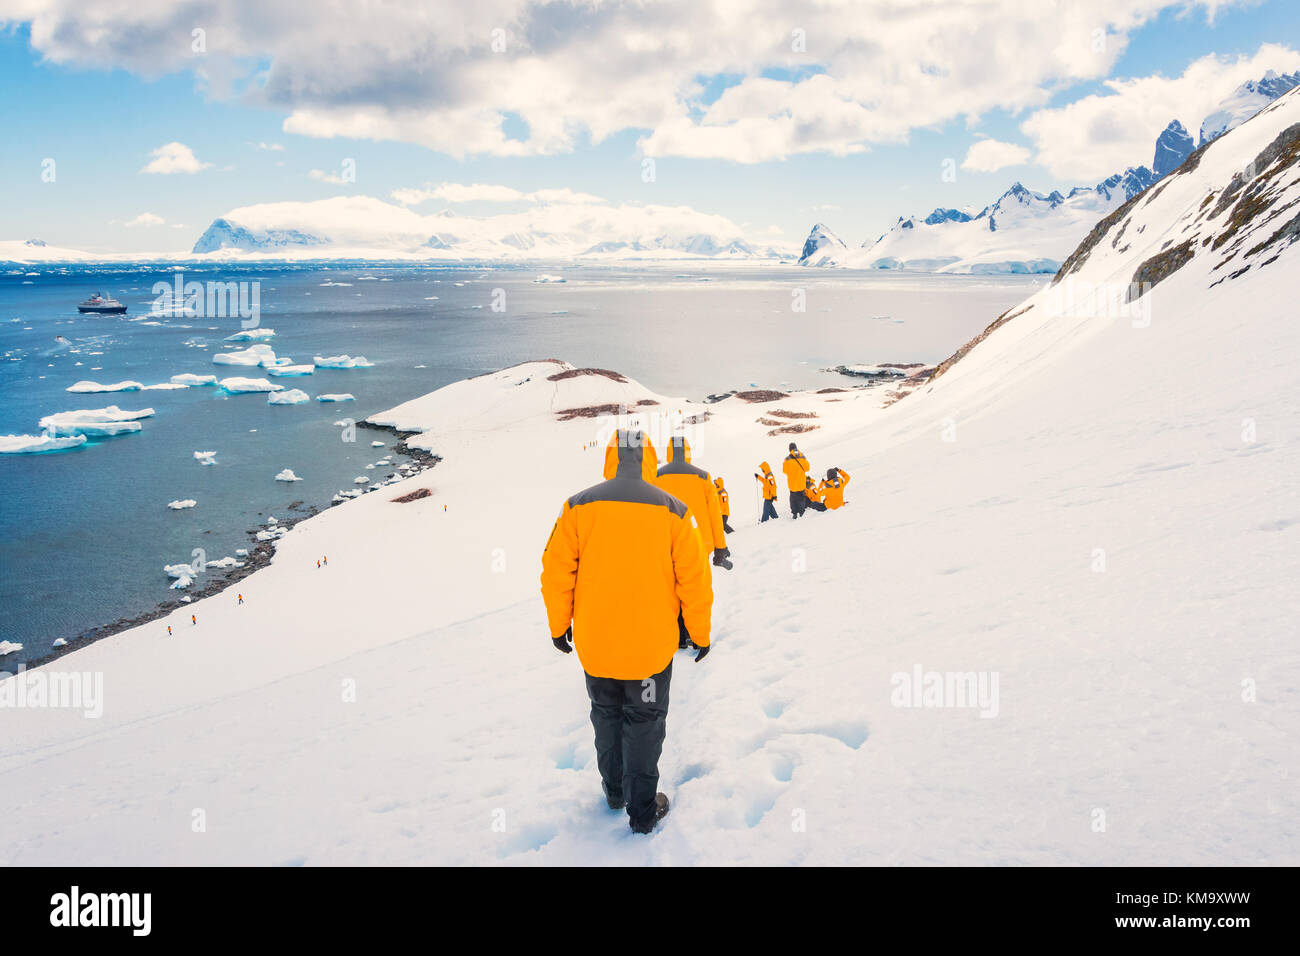 Les gens randonnée sur la côte de la péninsule de l'Antarctique alors que sur un navire de l'expédition Antarctique. Banque D'Images